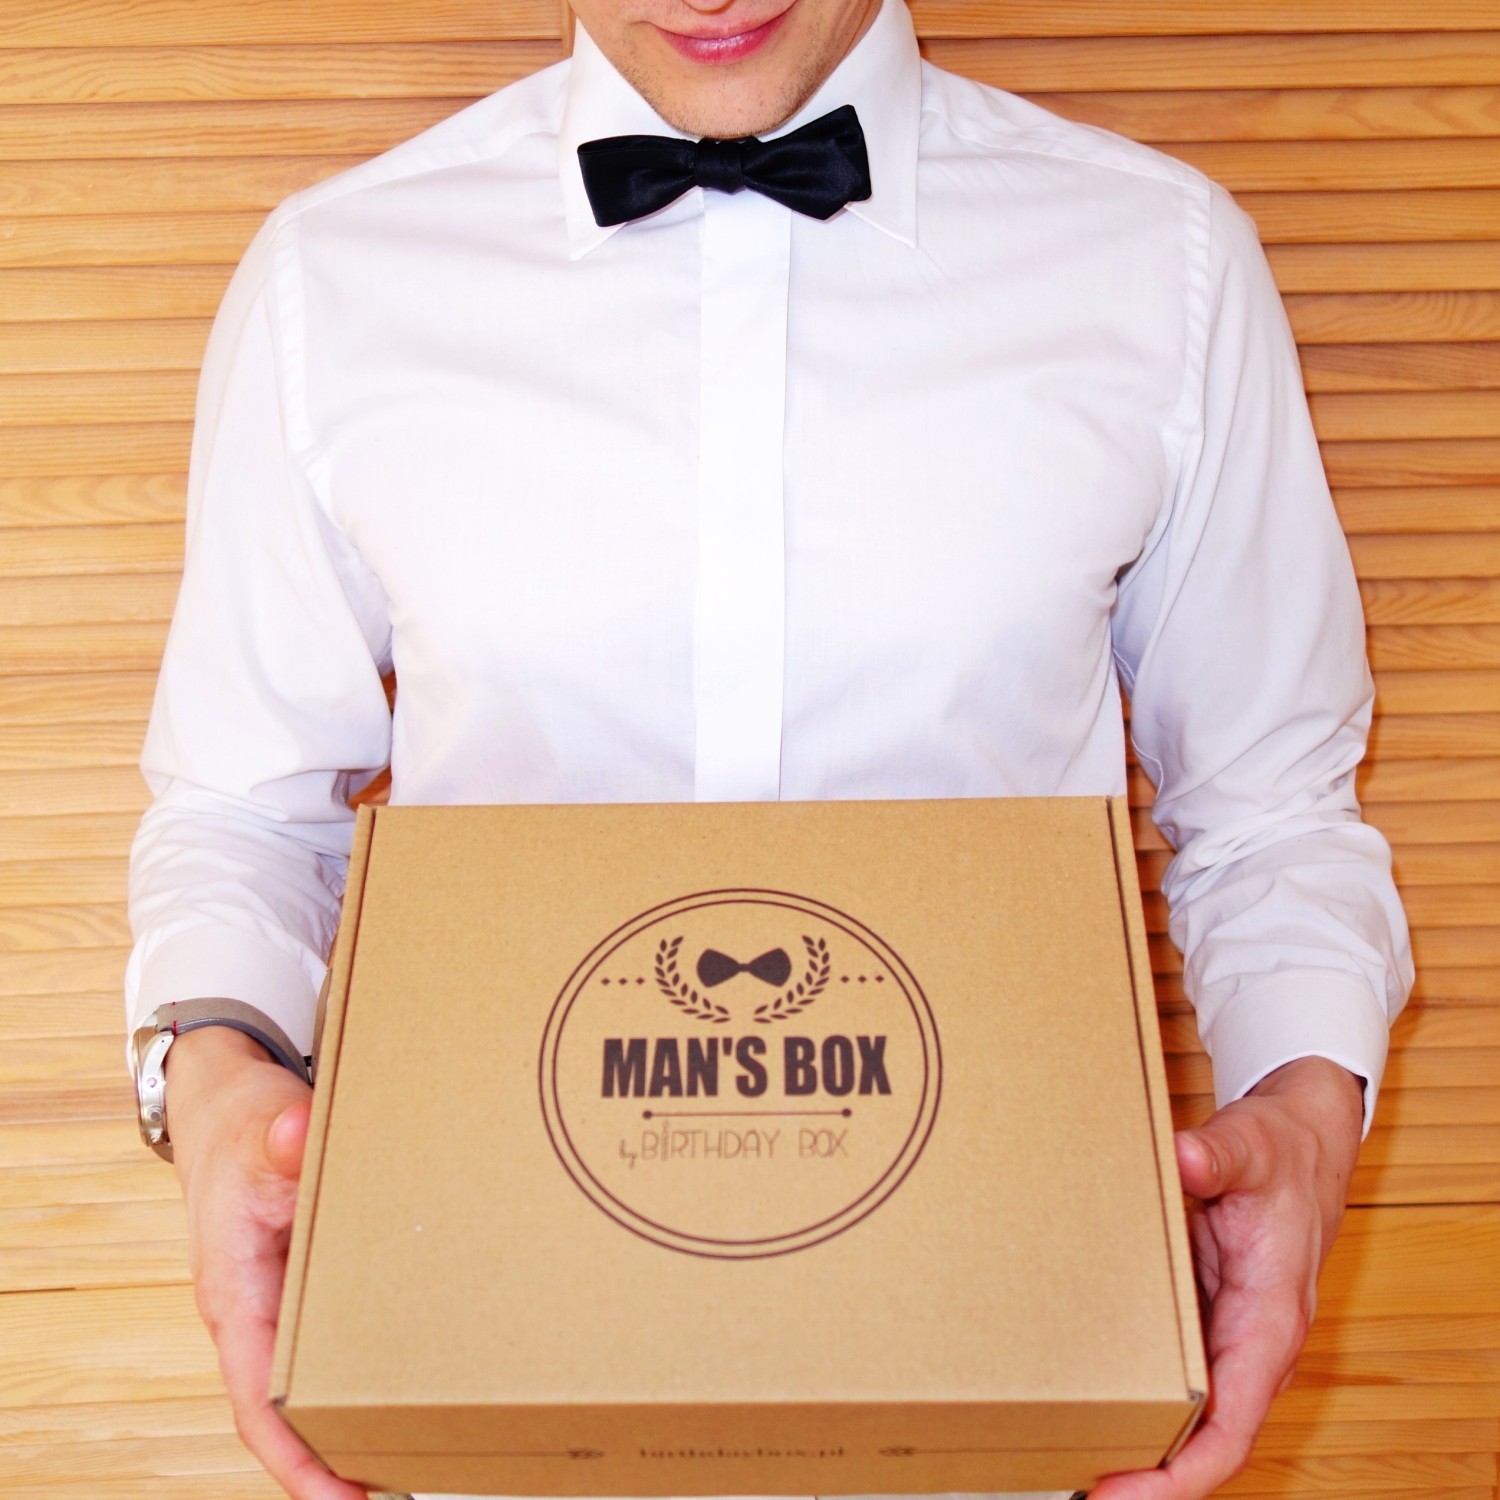 MAN'S BOX - edycja boxa dla mężczyzn